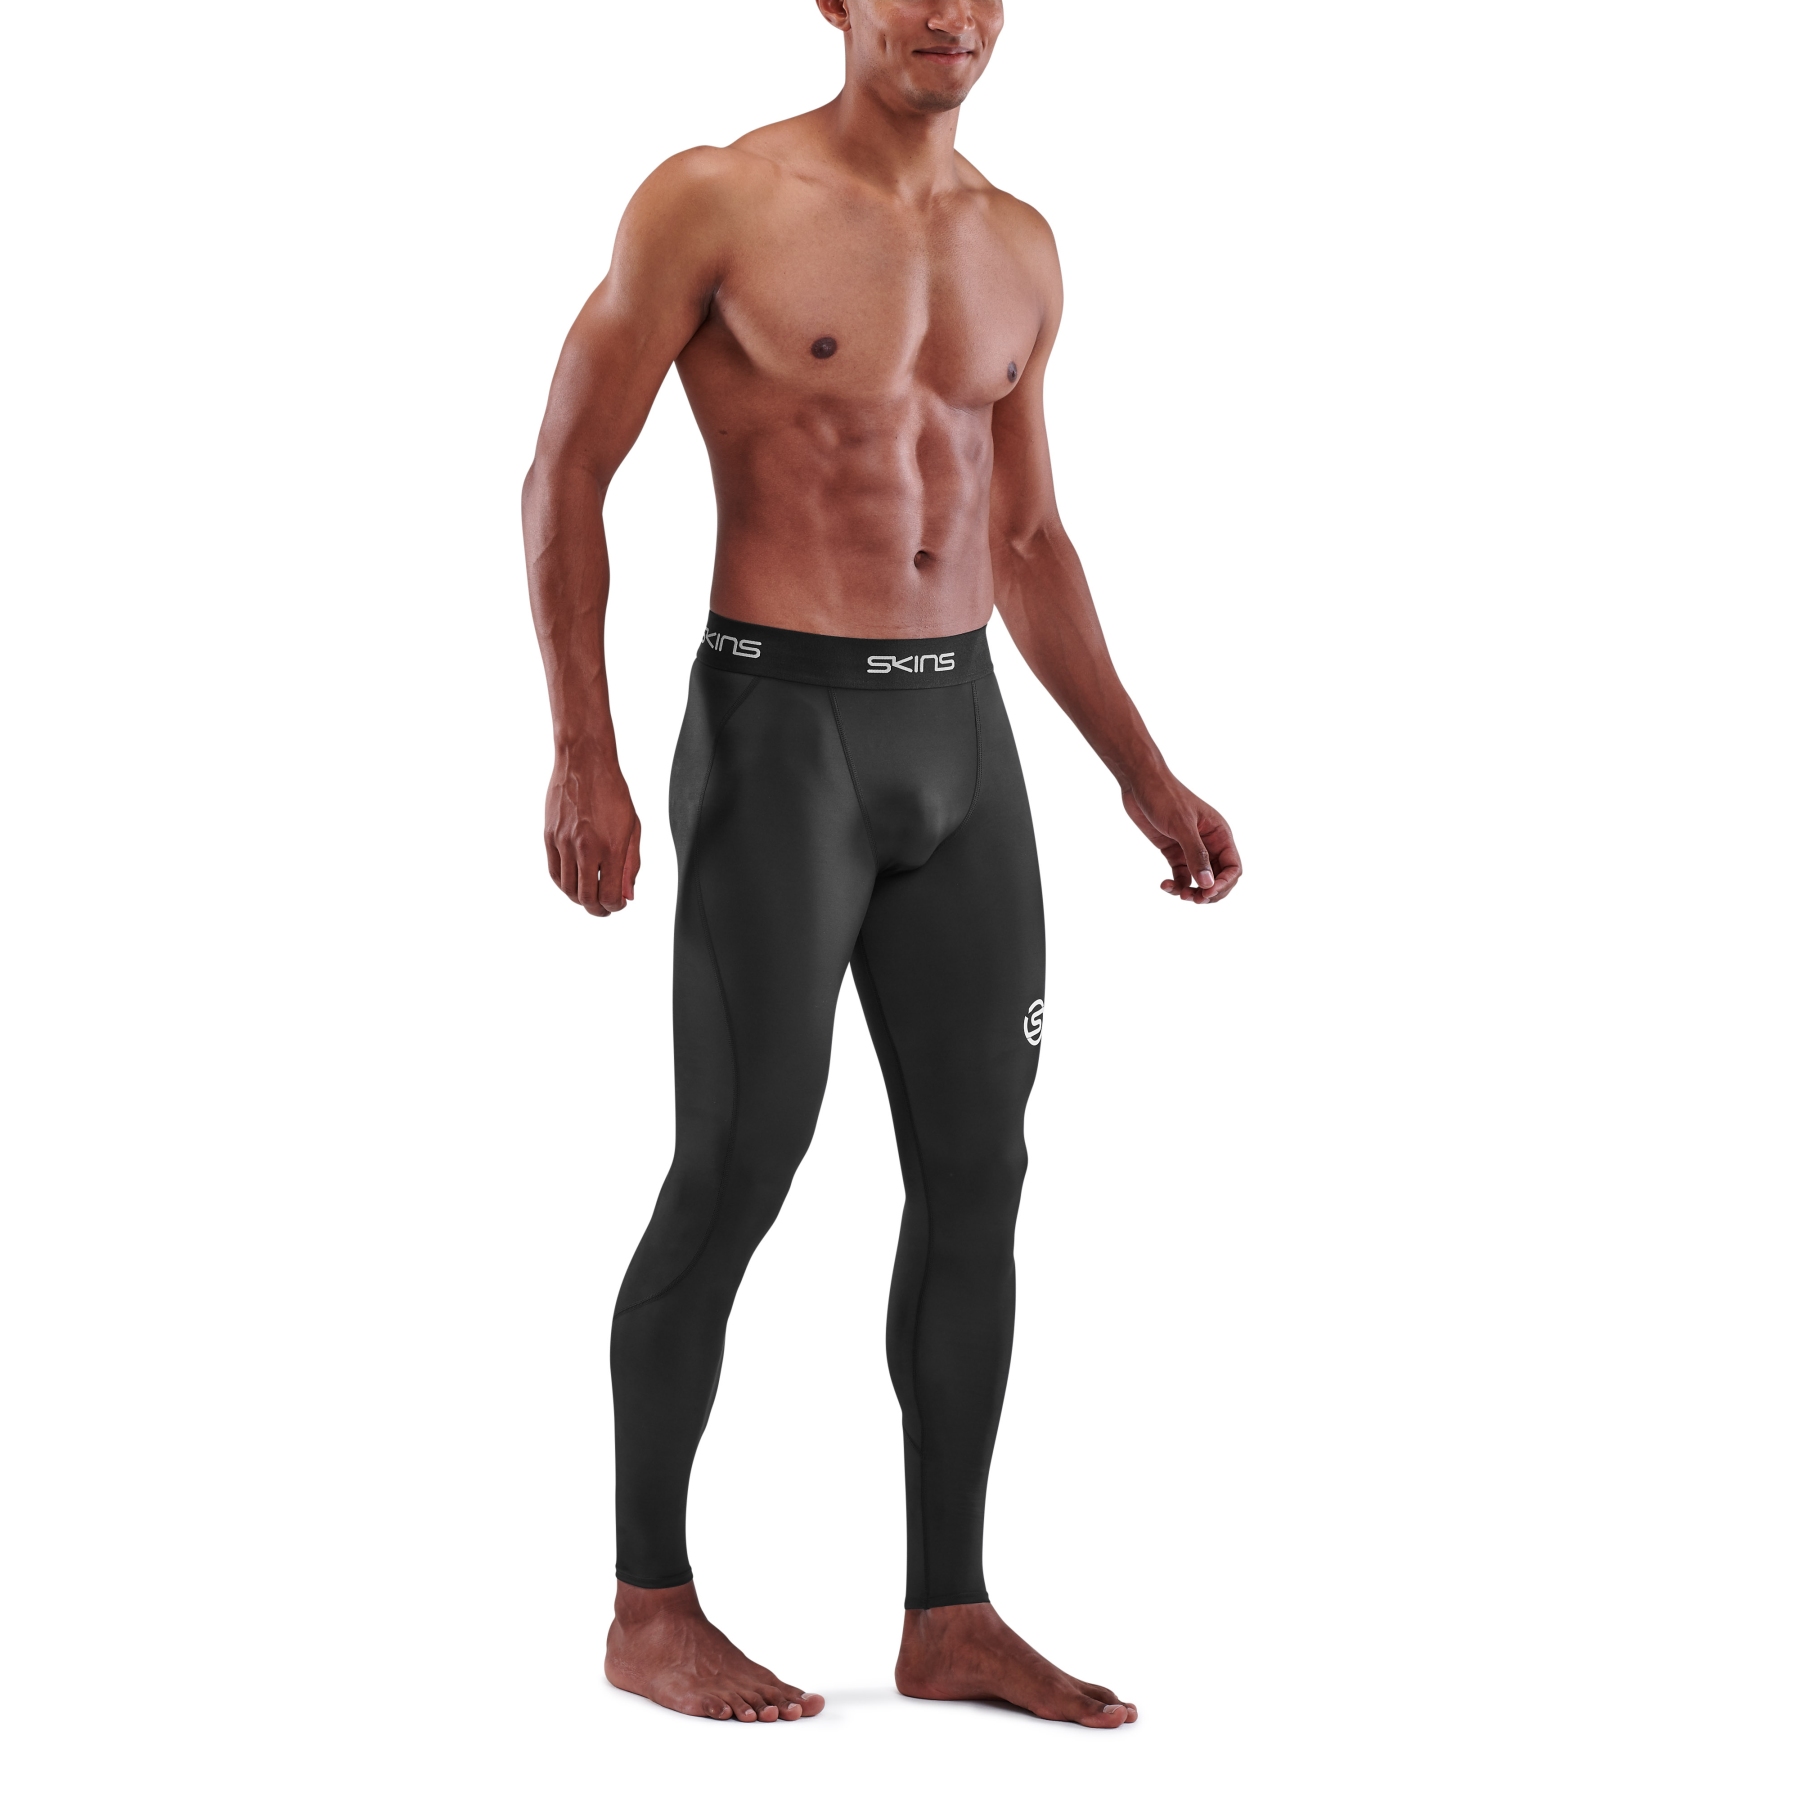 https://images.bike24.com/i/mb/4c/0c/39/skins-compression-1-series-men-long-tights-black-4-892958.jpg